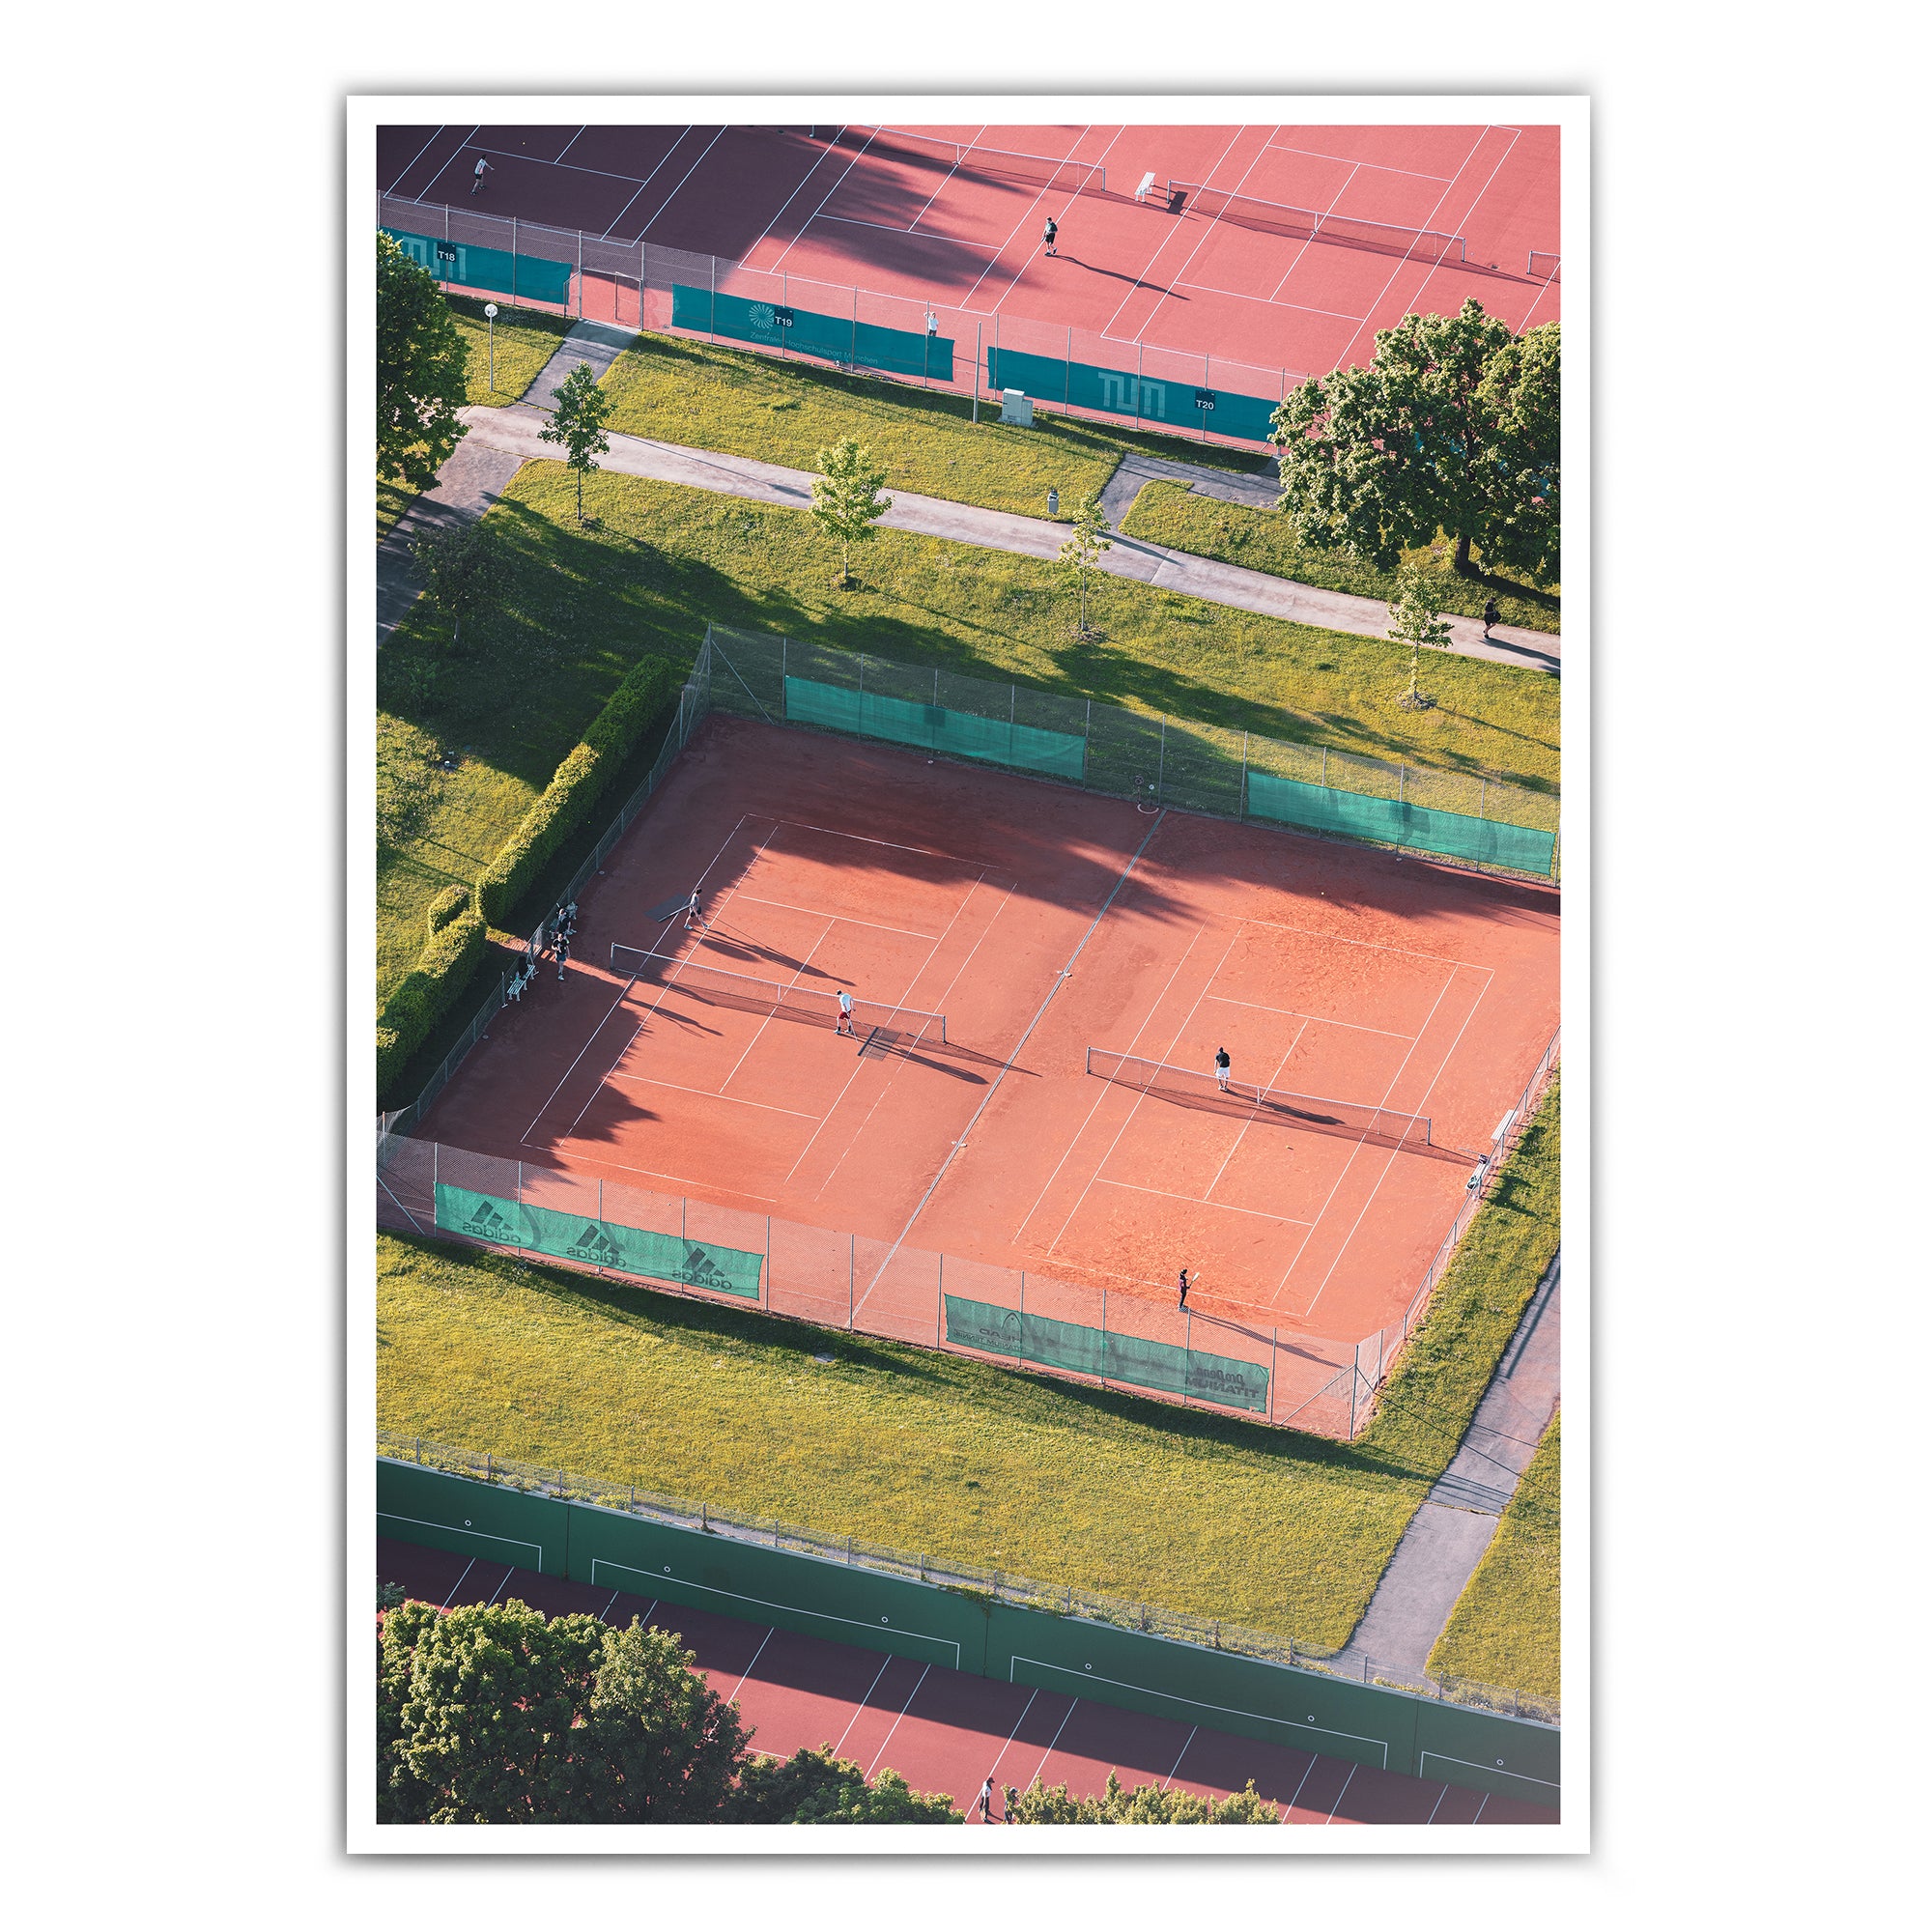 4one-pictures-muenchen-poster-munich-bild-tennis-sport-oben-retro-playing-motivation-do-it-bild-1.jpg